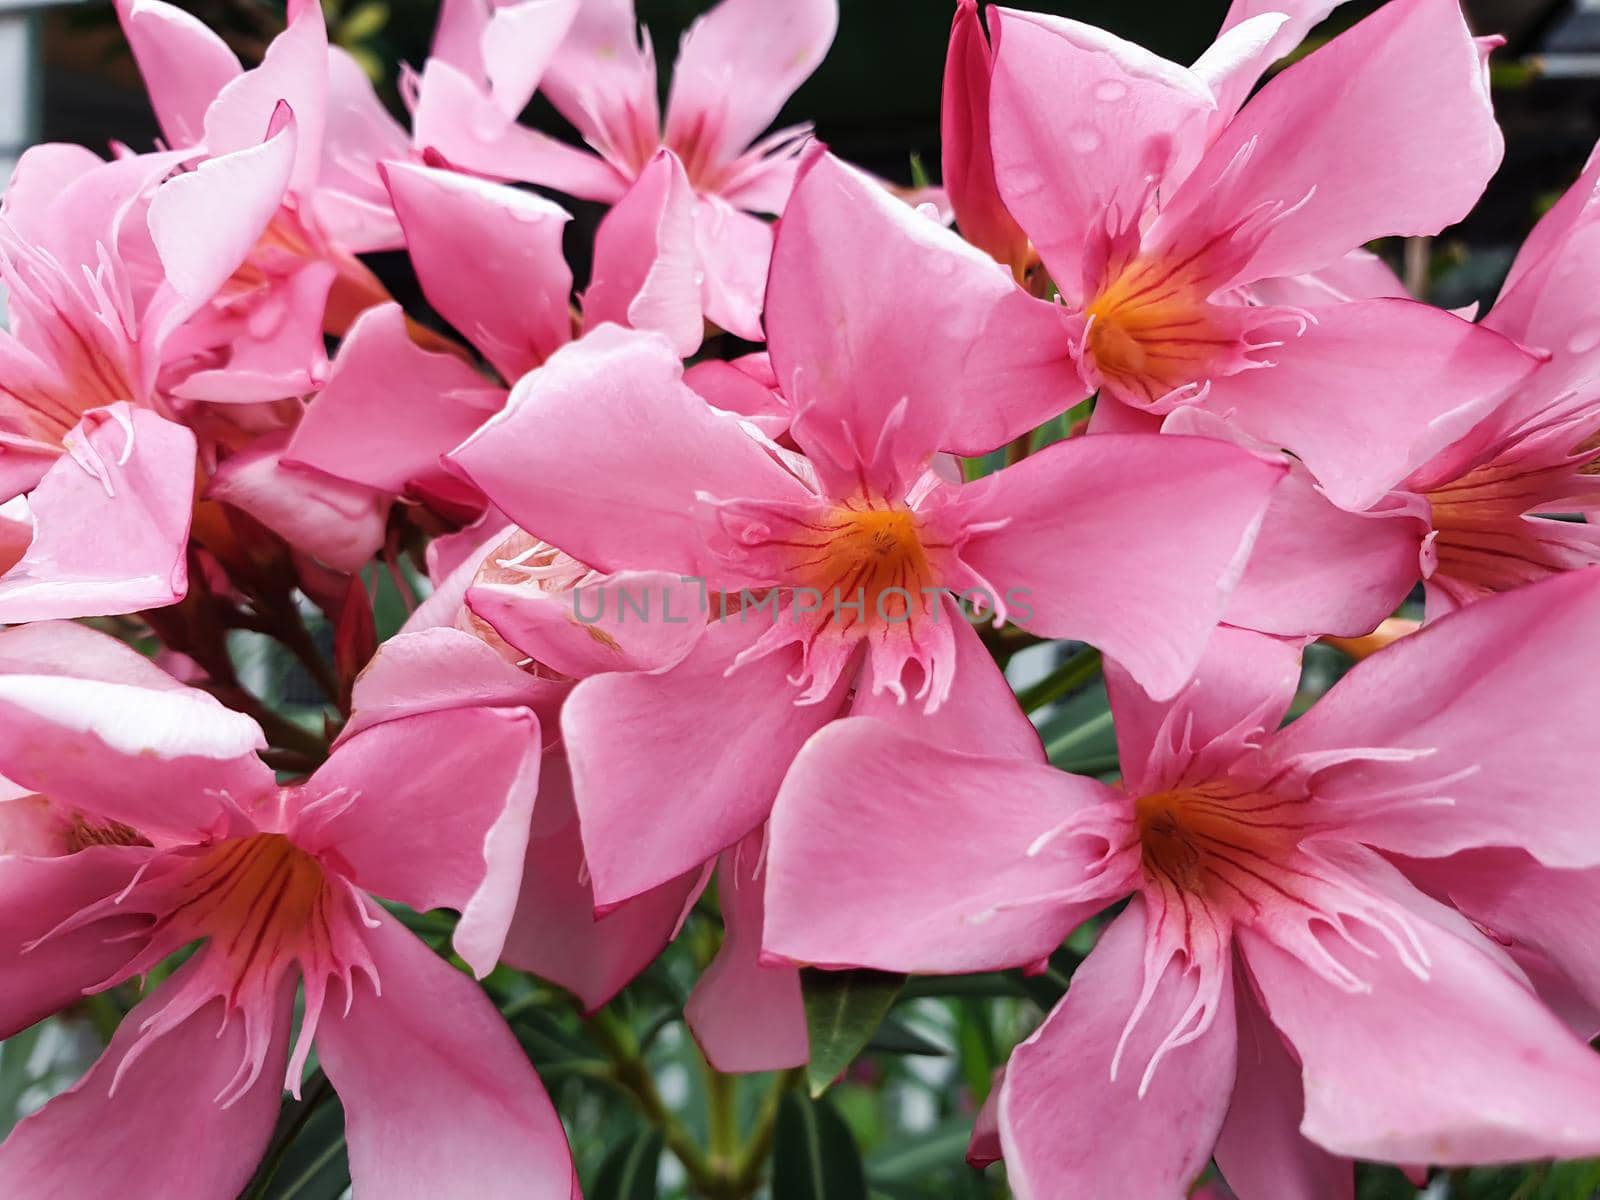 Flower pink color in garden by NongEngEng